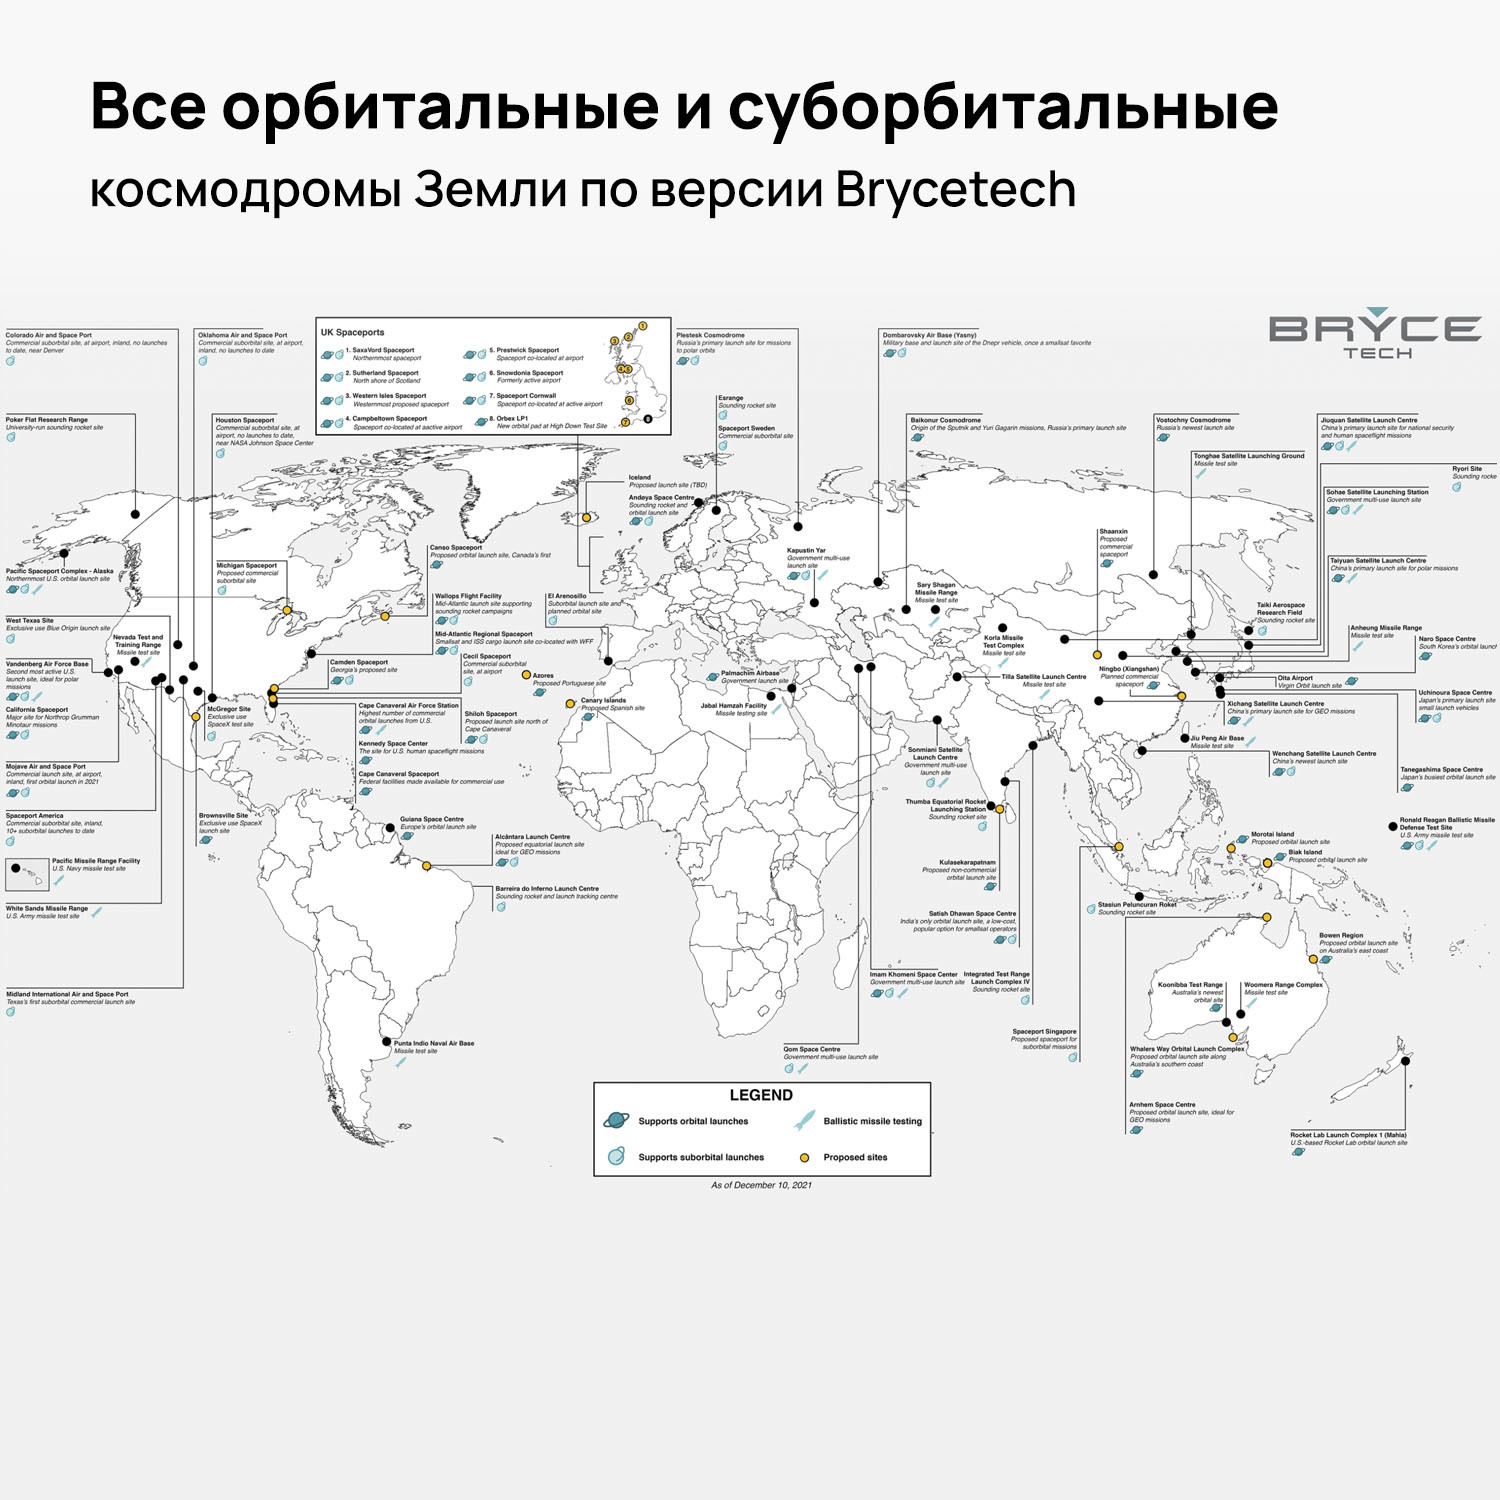 Космодром восточный где находится в россии какой. Карта космодромов в мире. Сколько космодромов в мире по странам. Космодромы США на карте.